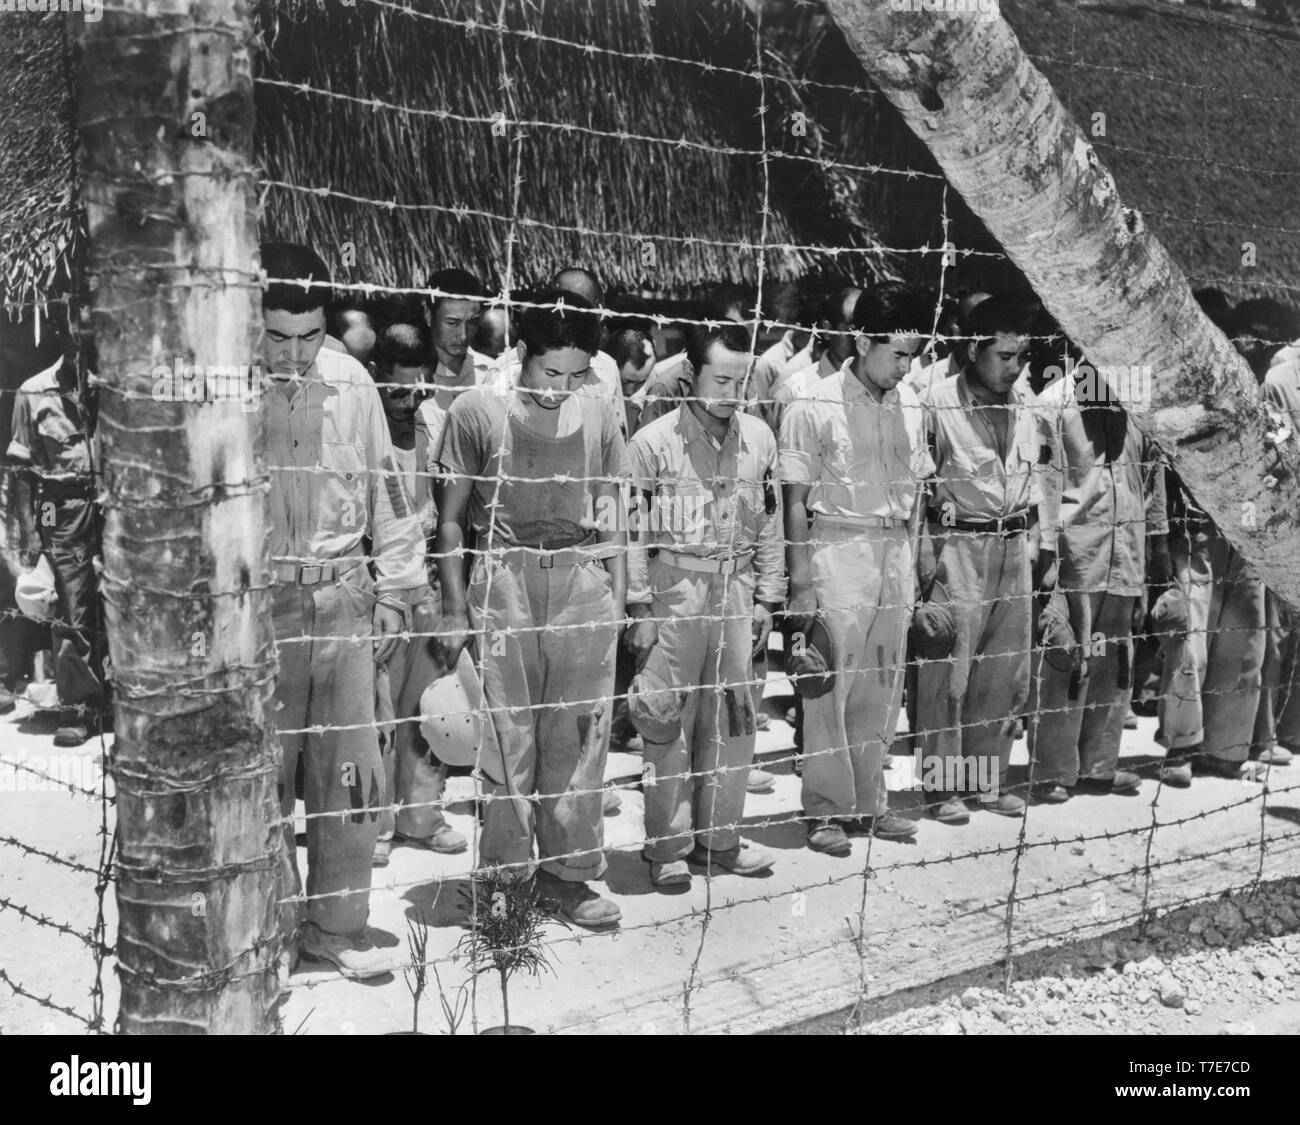 Japanische POW, mit Kopf neigte sich nach Anhörung Kaiser Hirohito machen Ankündigung der bedingungslosen Kapitulation Japans, Guam, U.S. Navy Foto, 15. August 1945 Stockfoto